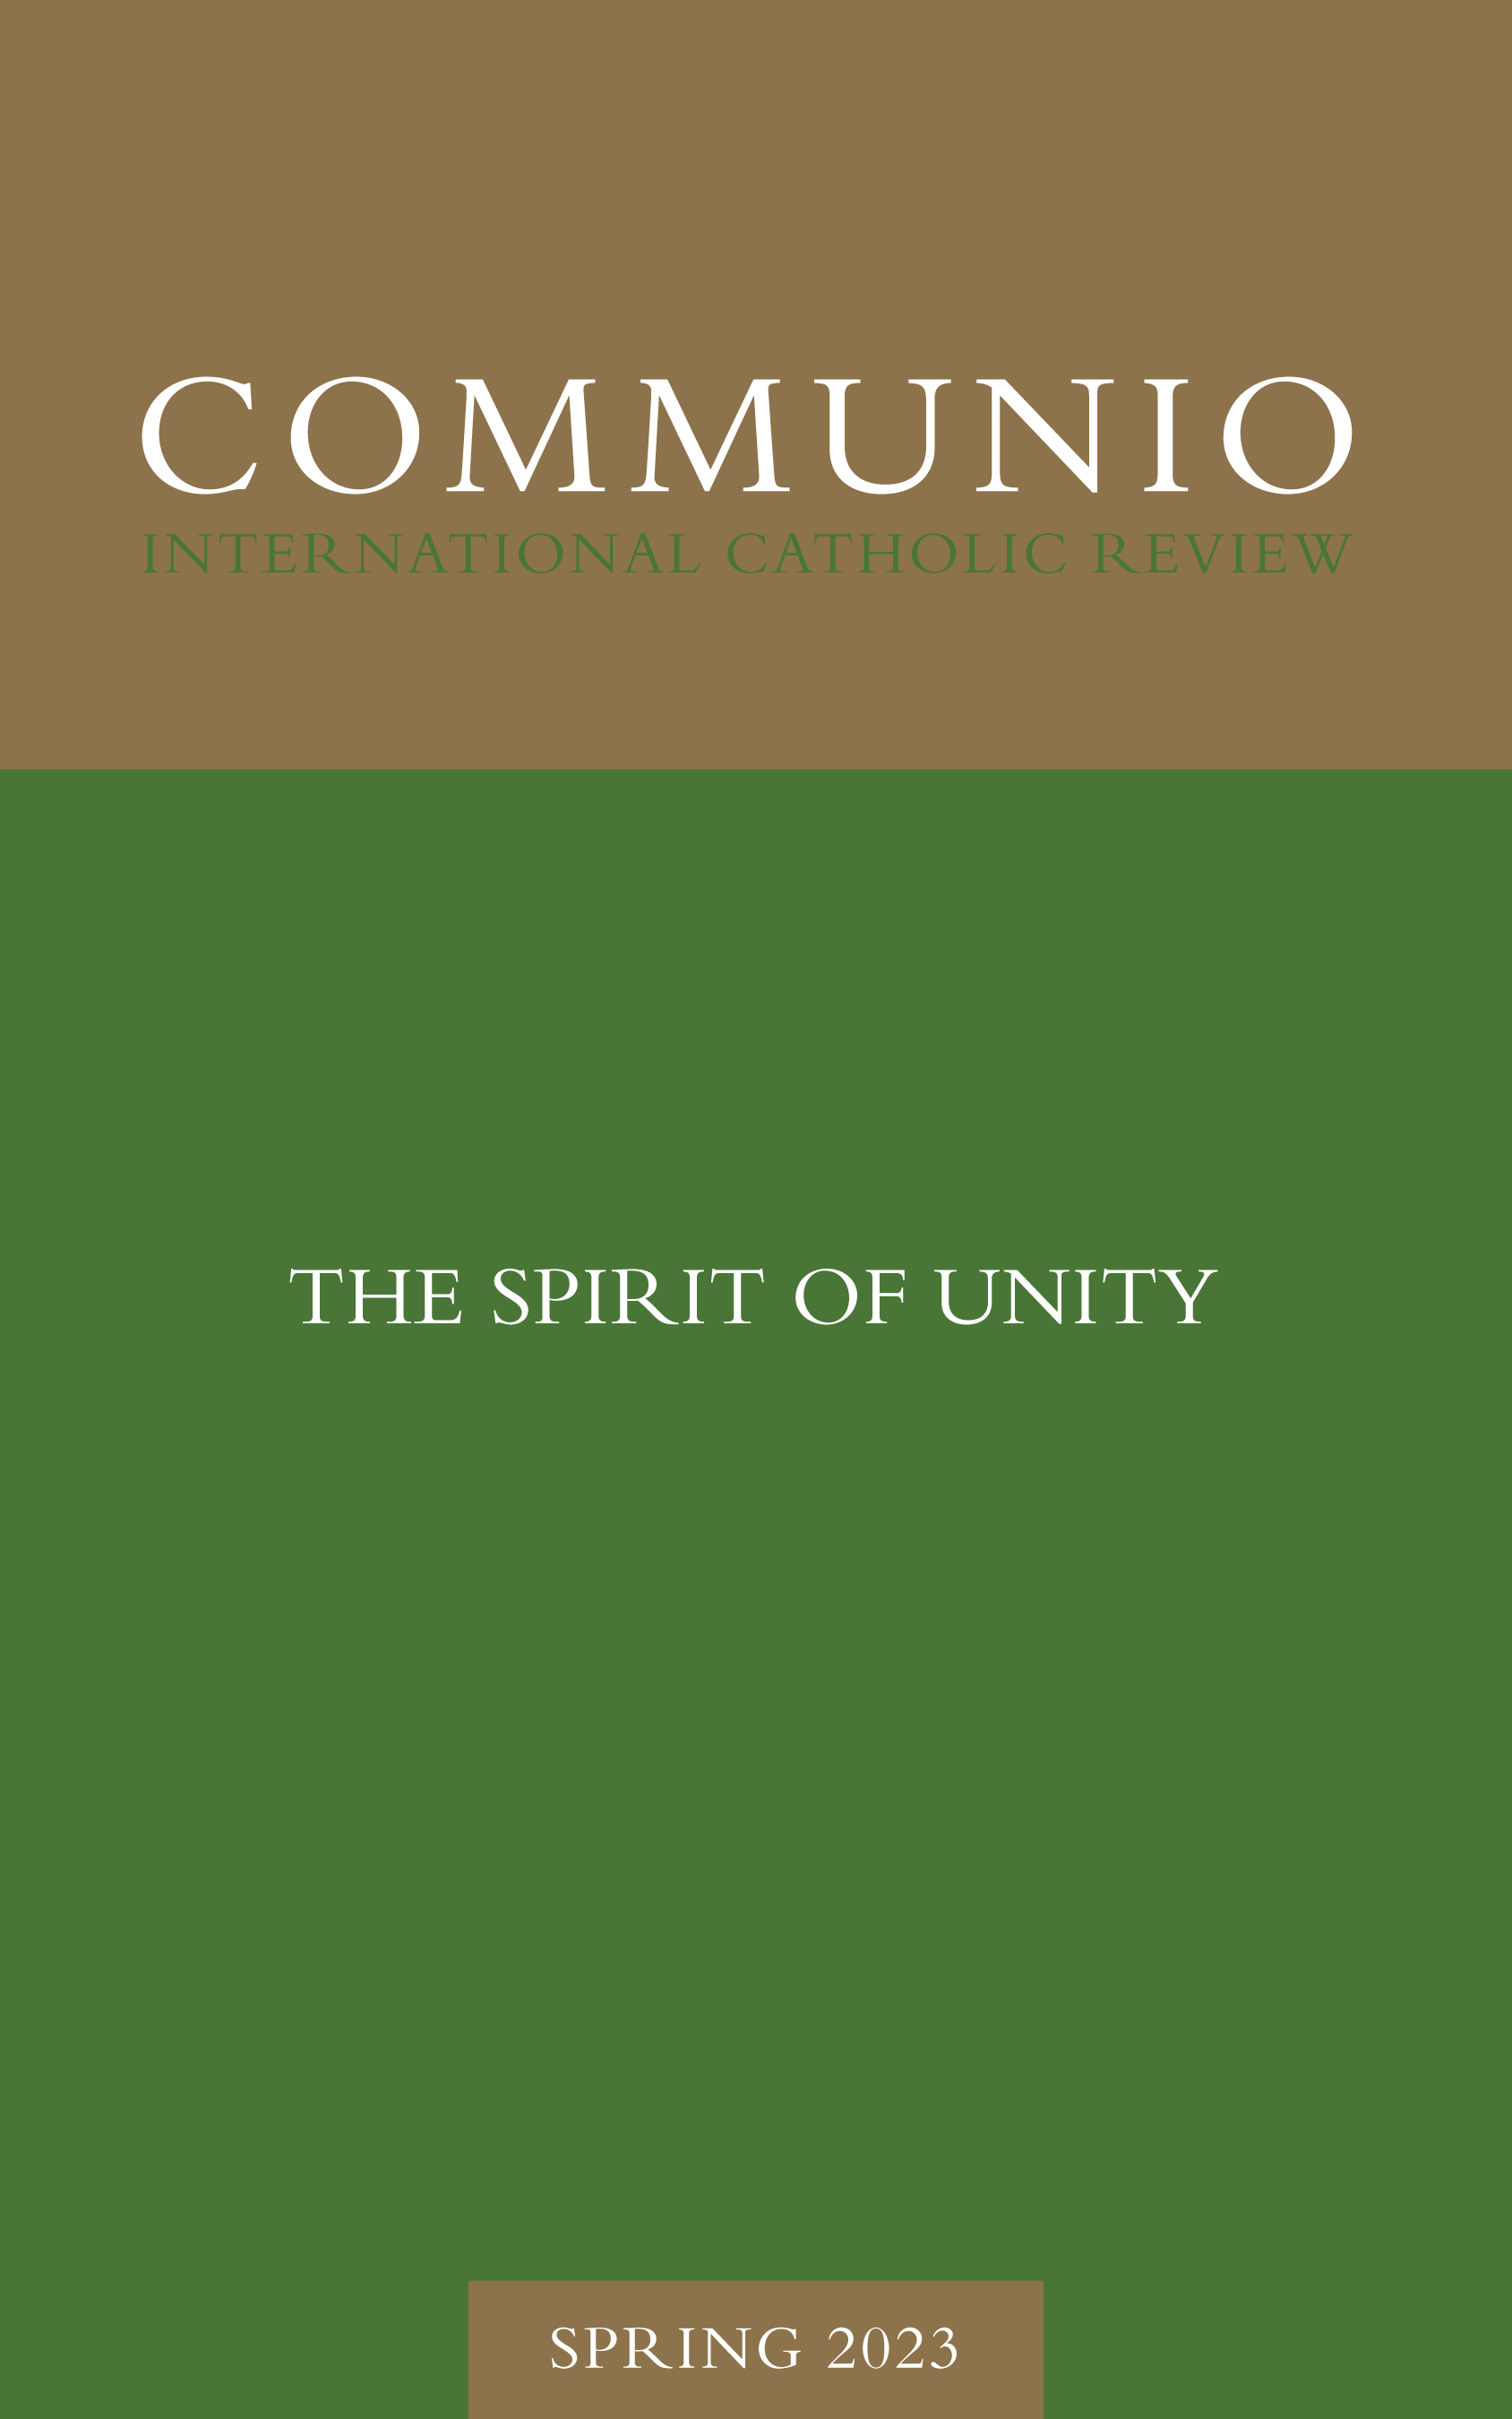 Communio - Spring 2023 - The Spirit of Unity